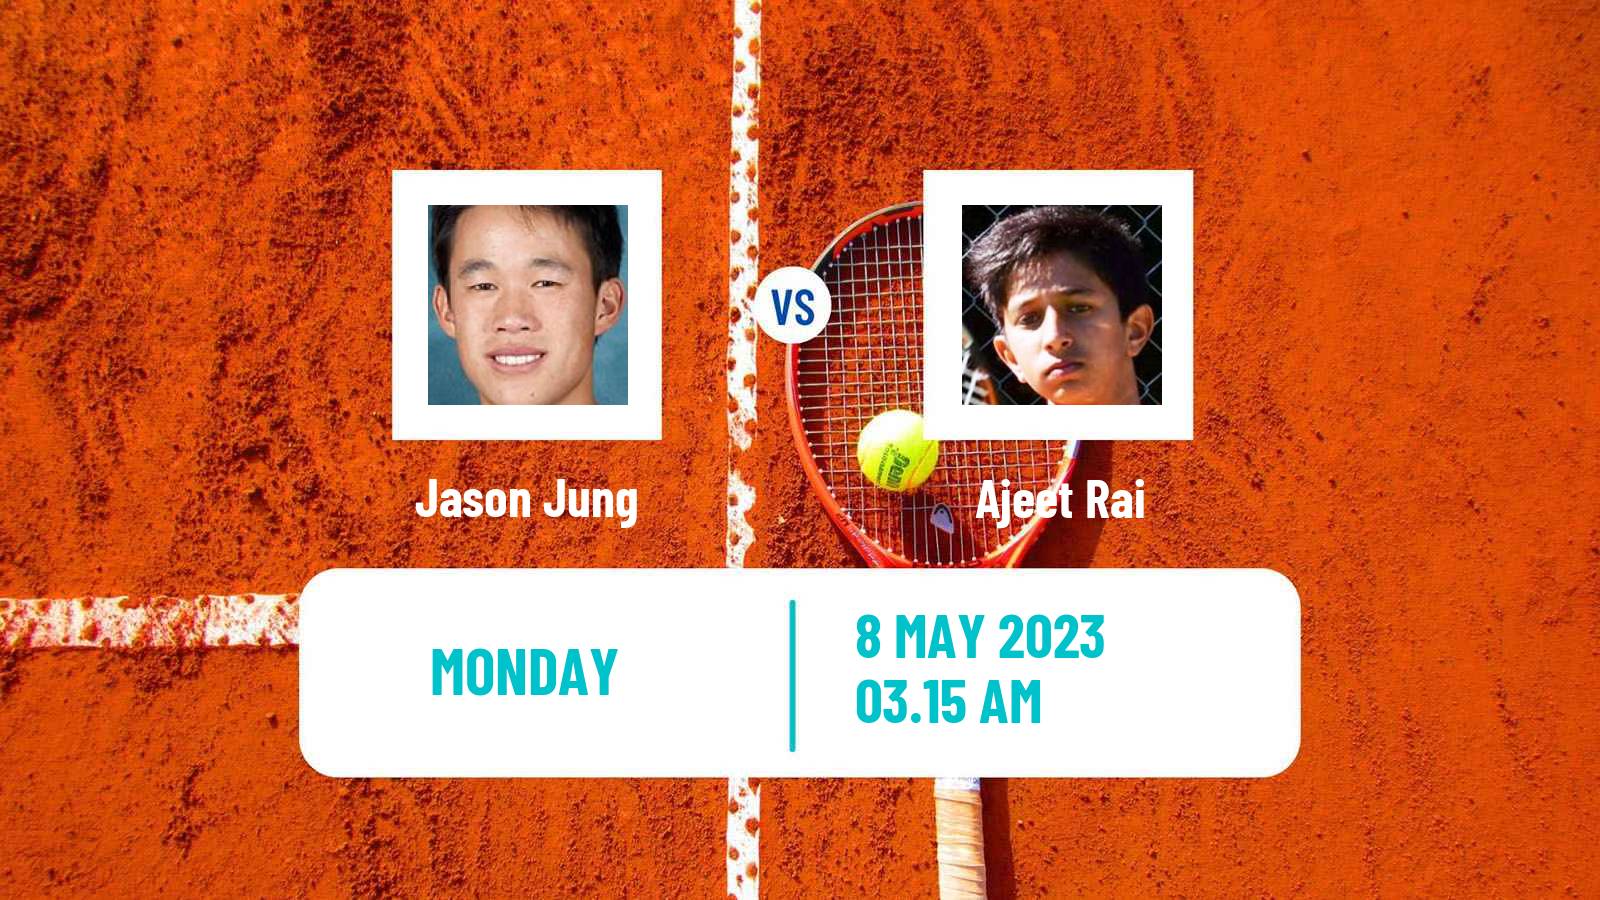 Tennis ATP Challenger Jason Jung - Ajeet Rai